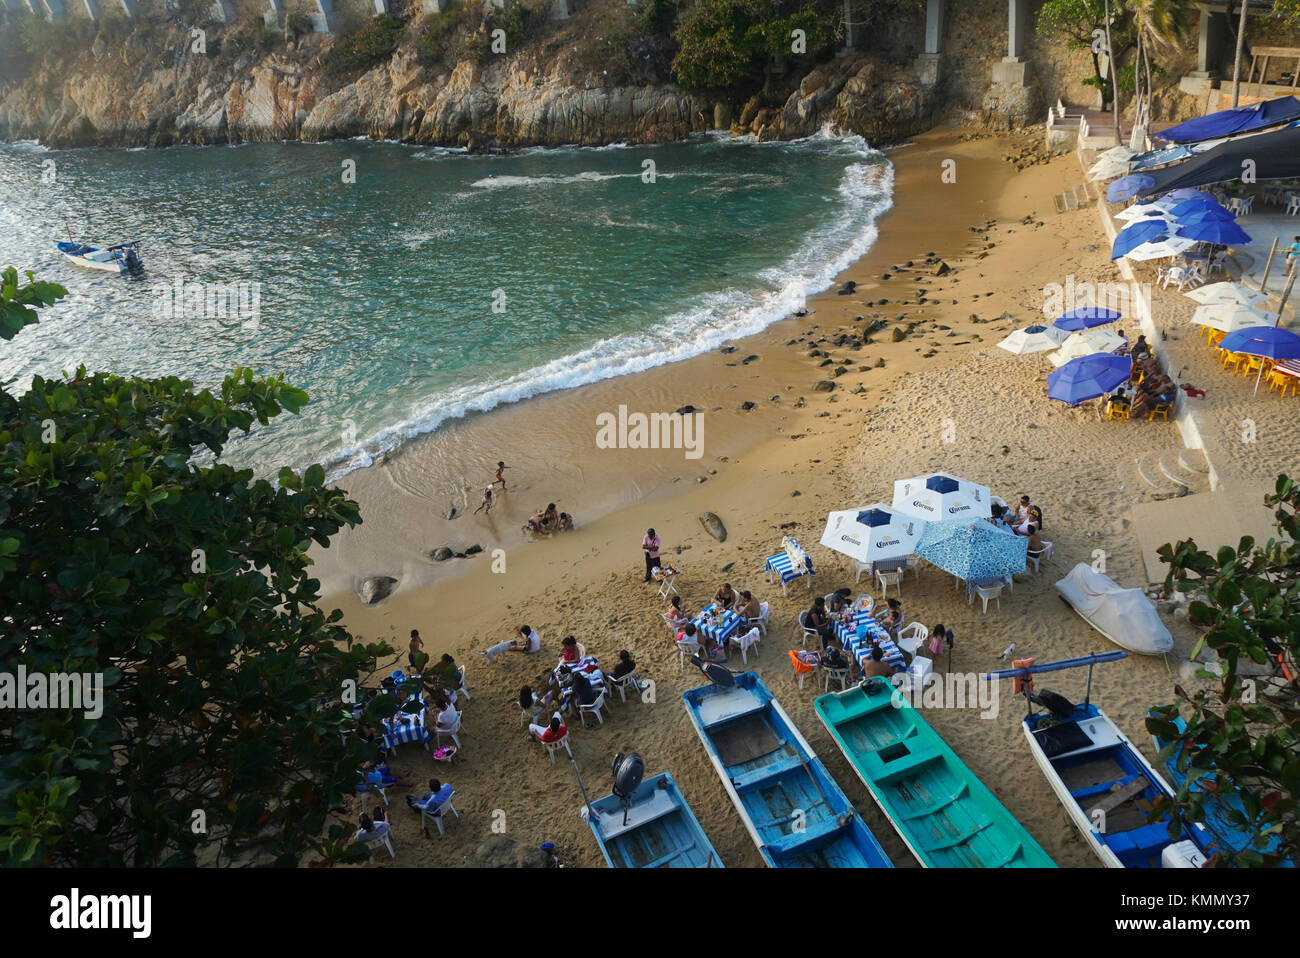 Playa La Angosta (La Angosta Beach) in Acapulco, Mexico Stock Photo